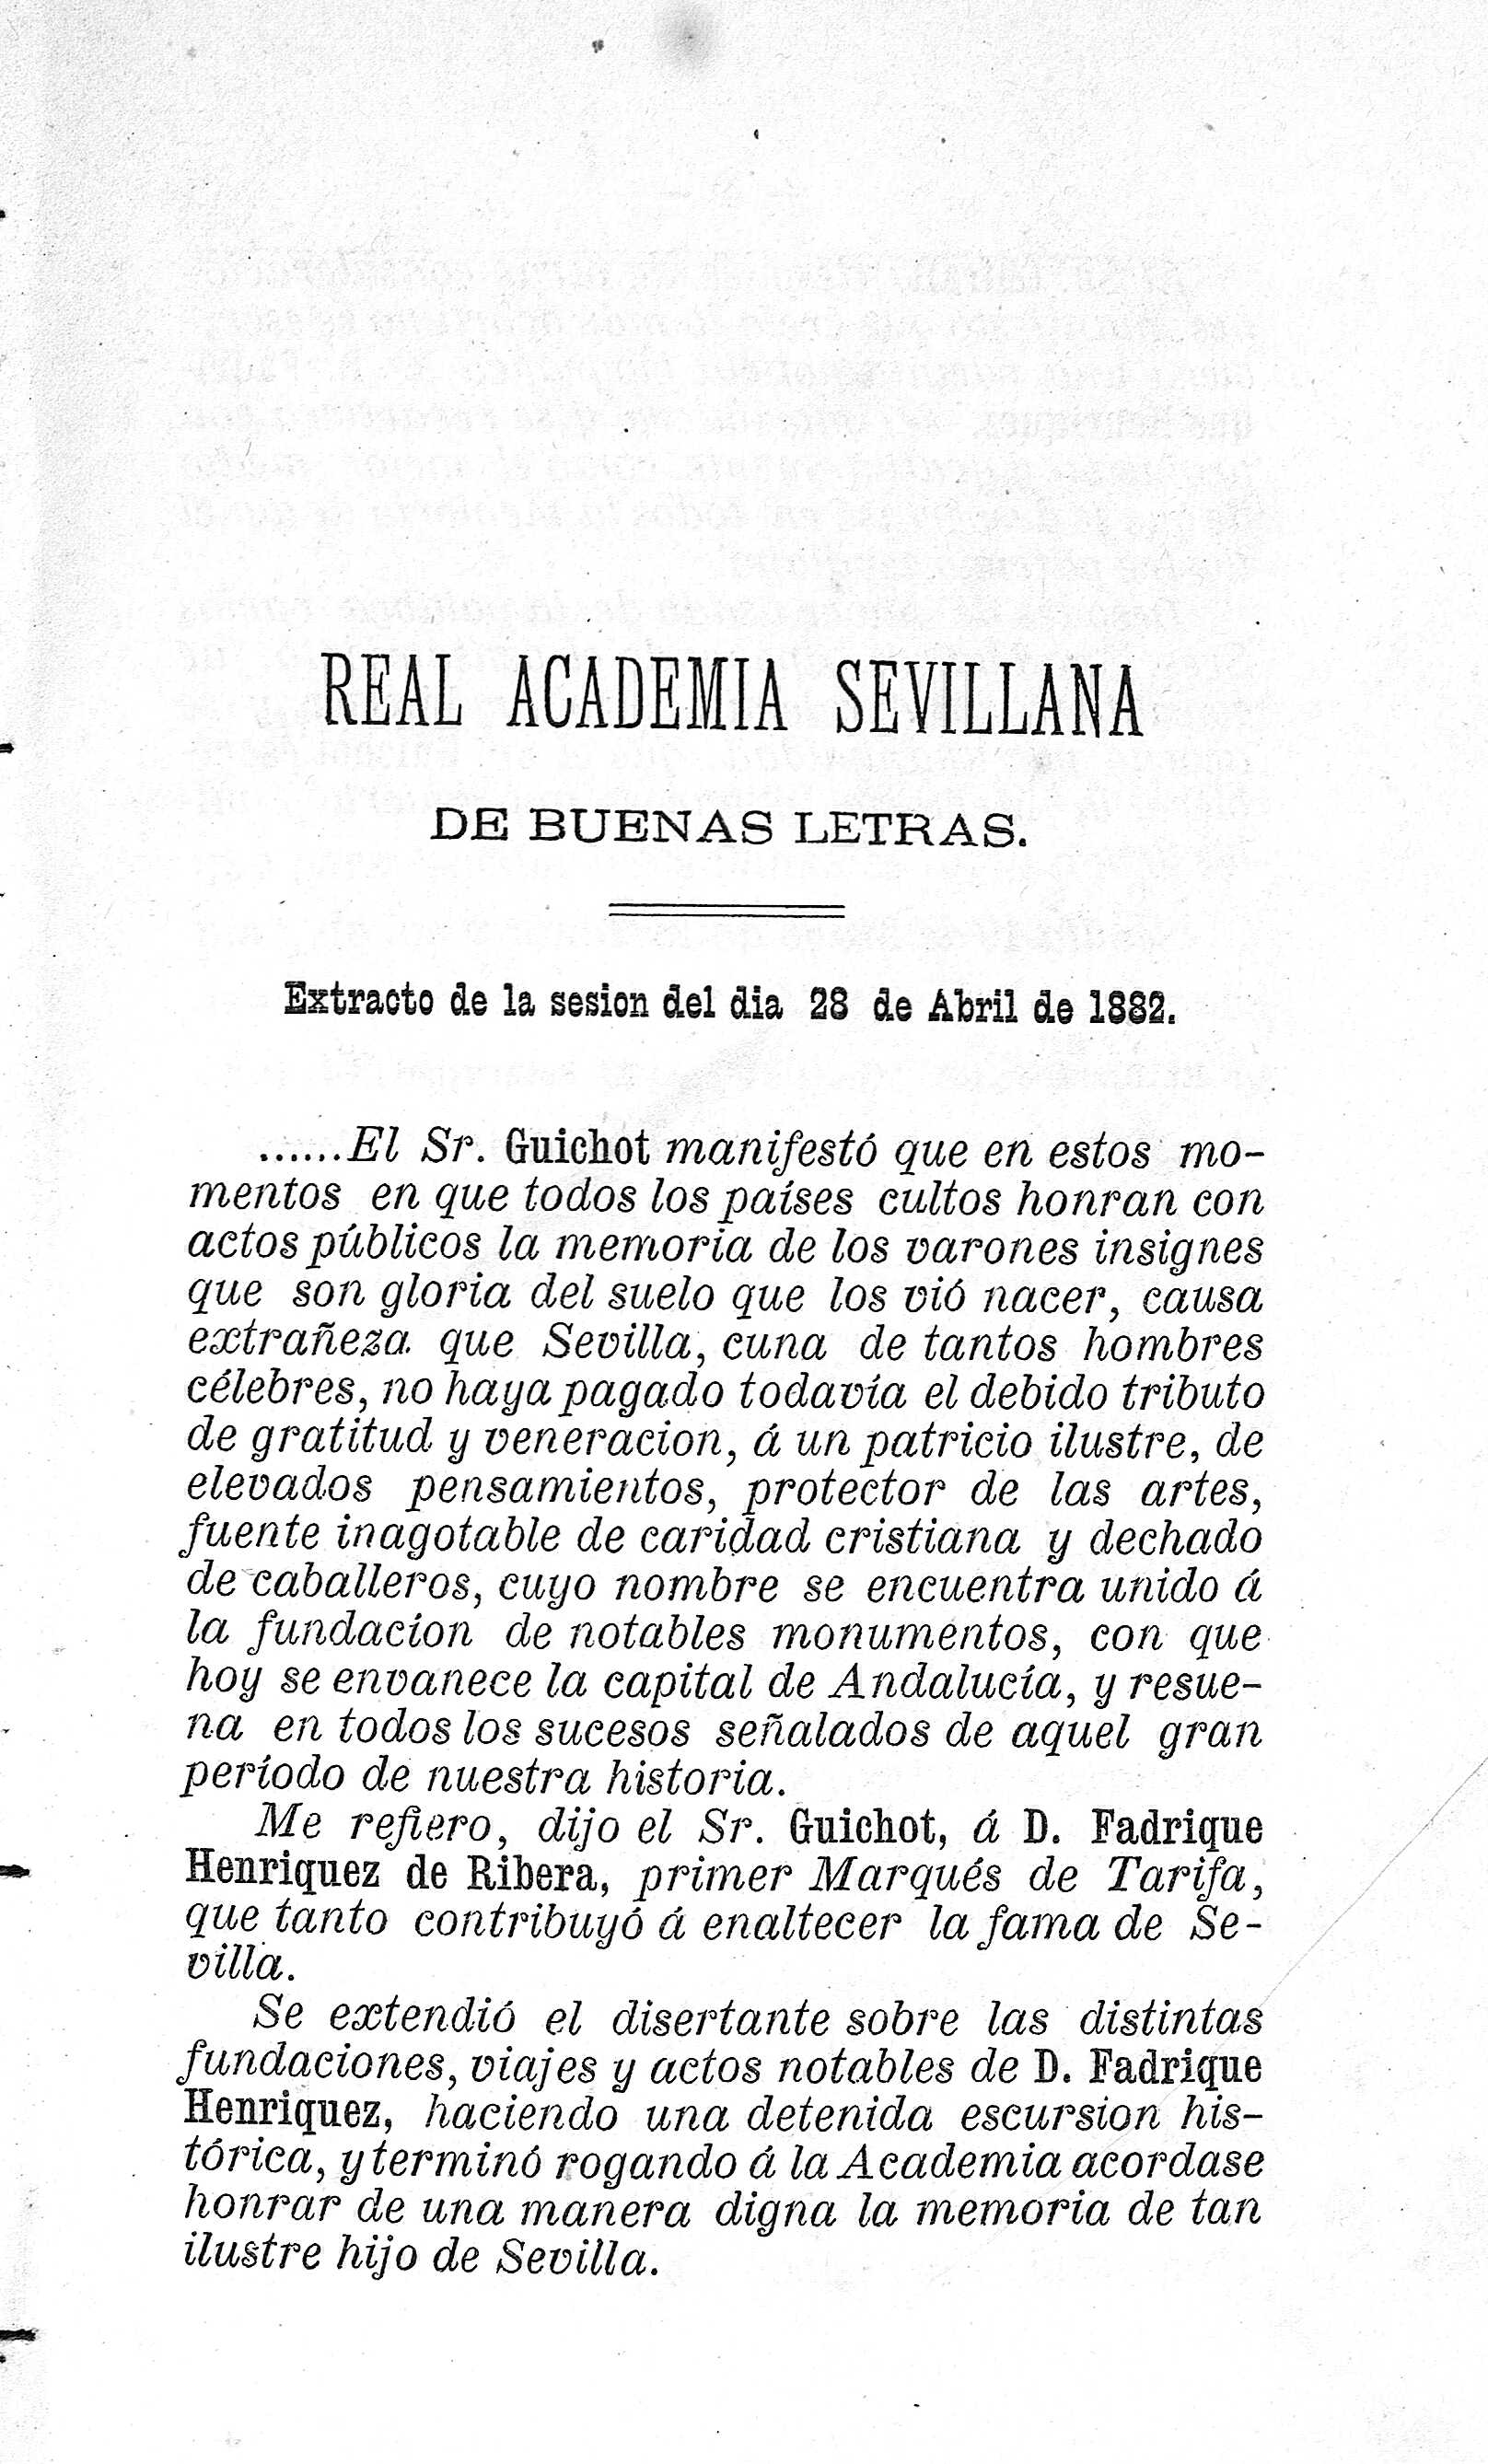 Real Academia Sevillana de Buenas Letras